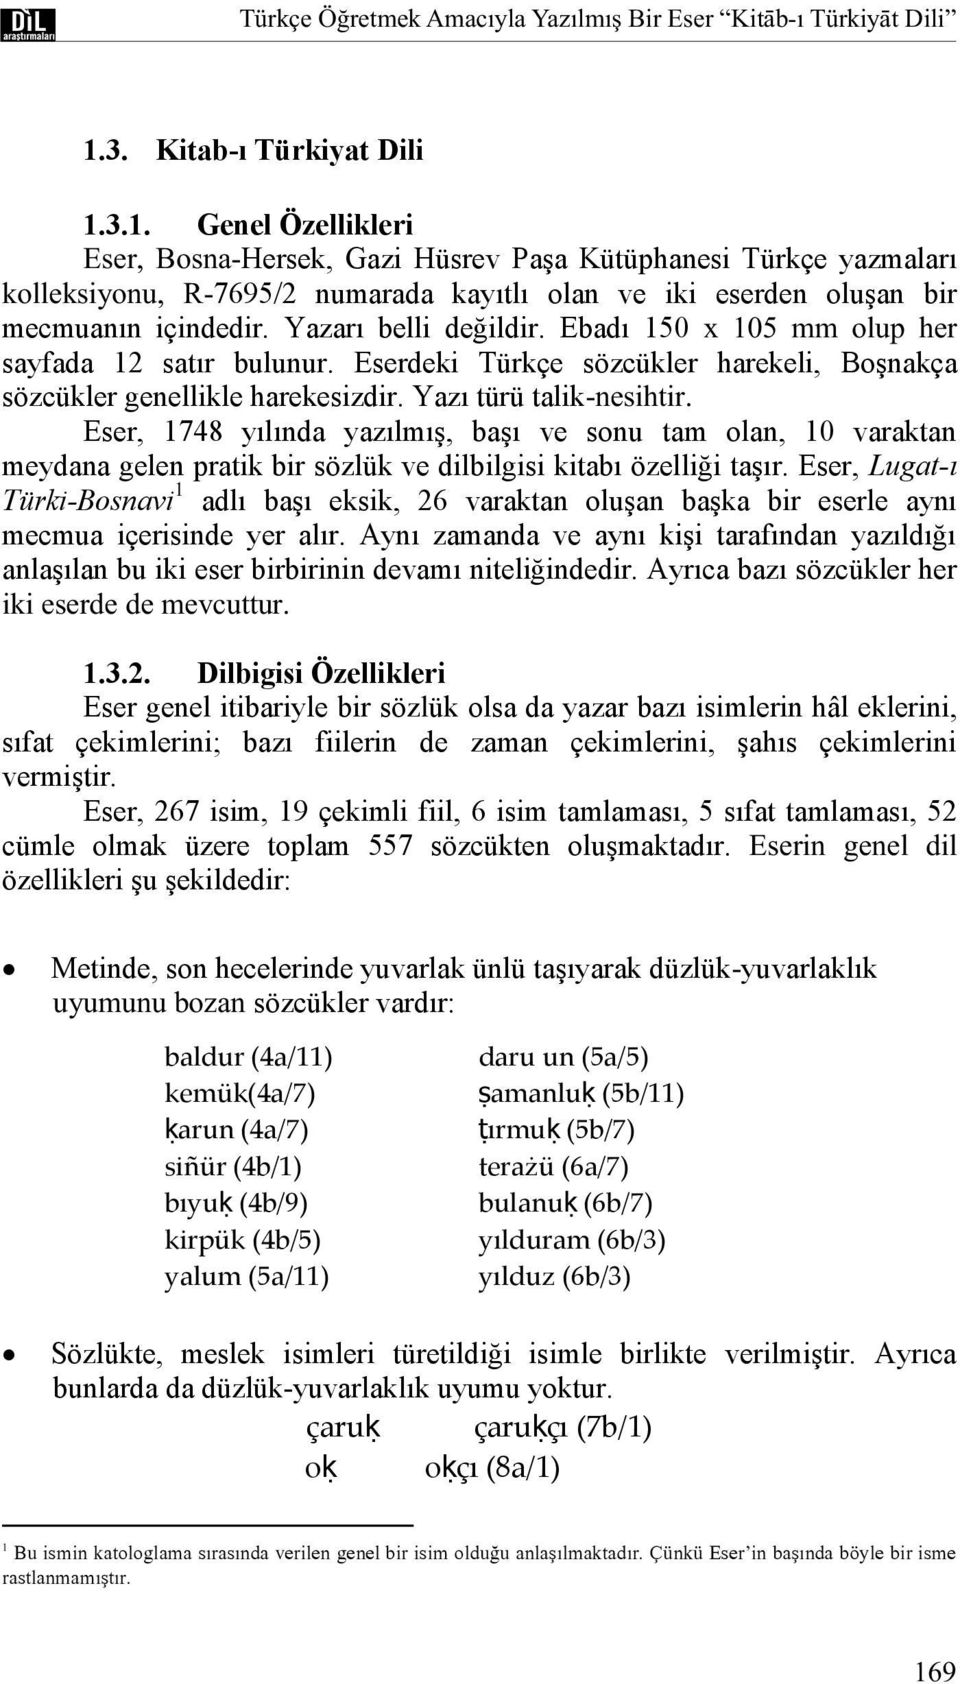 3.1. Genel Özellikleri Eser, Bosna-Hersek, Gazi Hüsrev PaĢa Kütüphanesi Türkçe yazmaları kolleksiyonu, R-7695/2 numarada kayıtlı olan ve iki eserden oluģan bir mecmuanın içindedir.